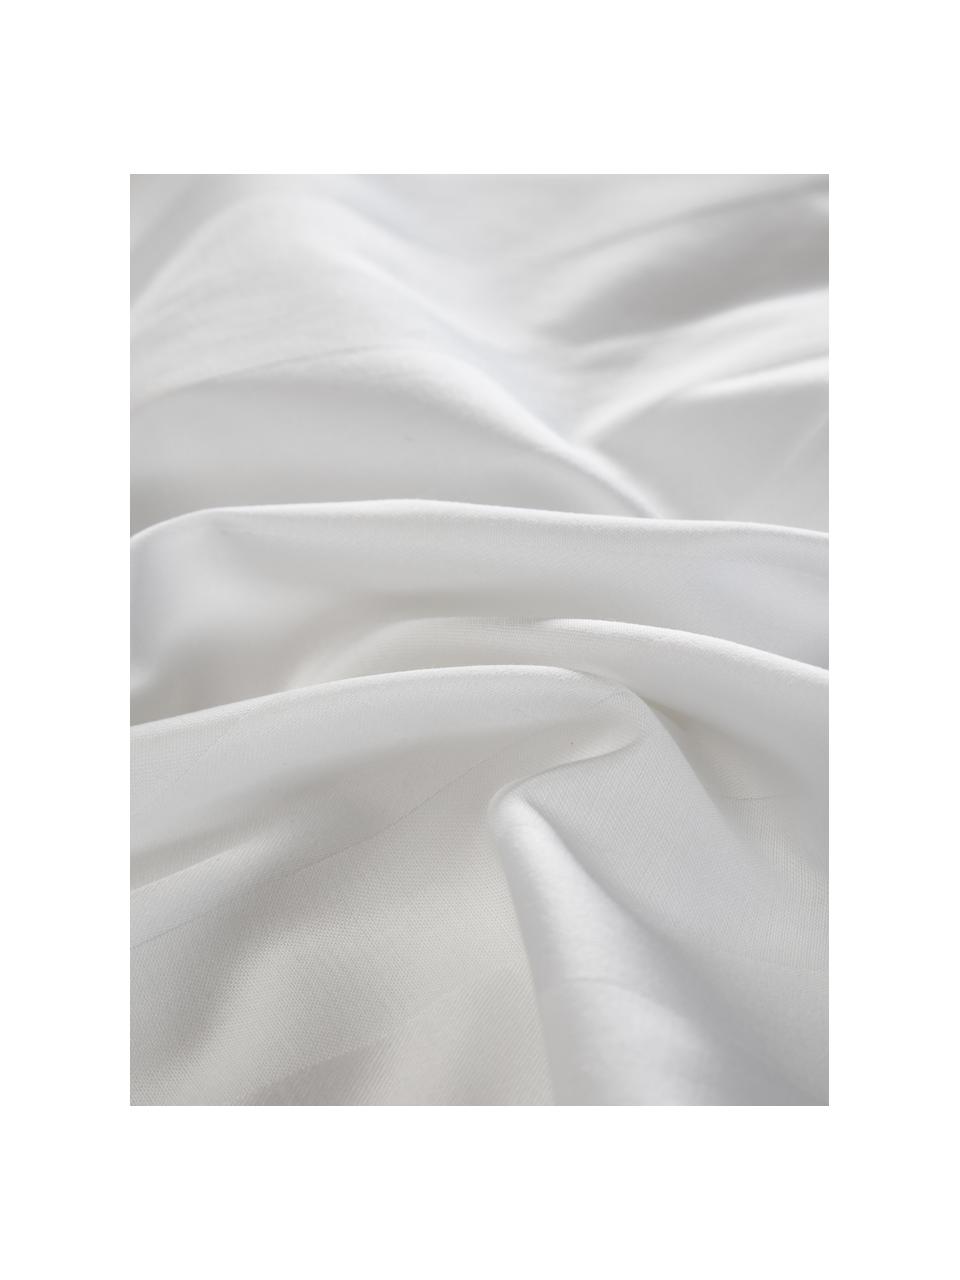 Copripiumino in raso bianco Willa, Tessuto: raso Densità del filo 250, Bianco, Larg. 200 x Lung. 200 cm